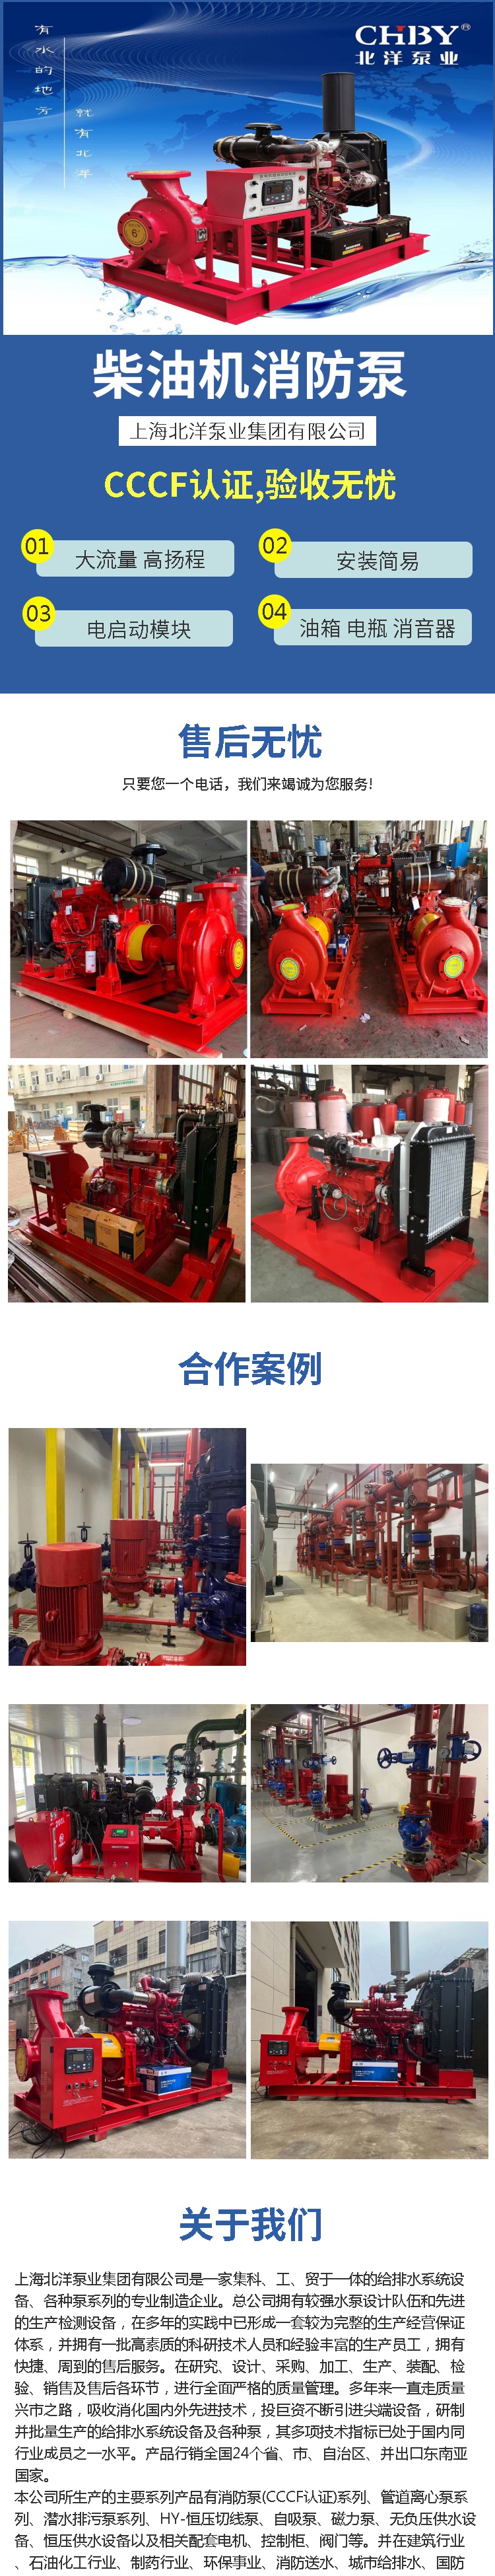 上海消防柴油机消防泵组批发价格